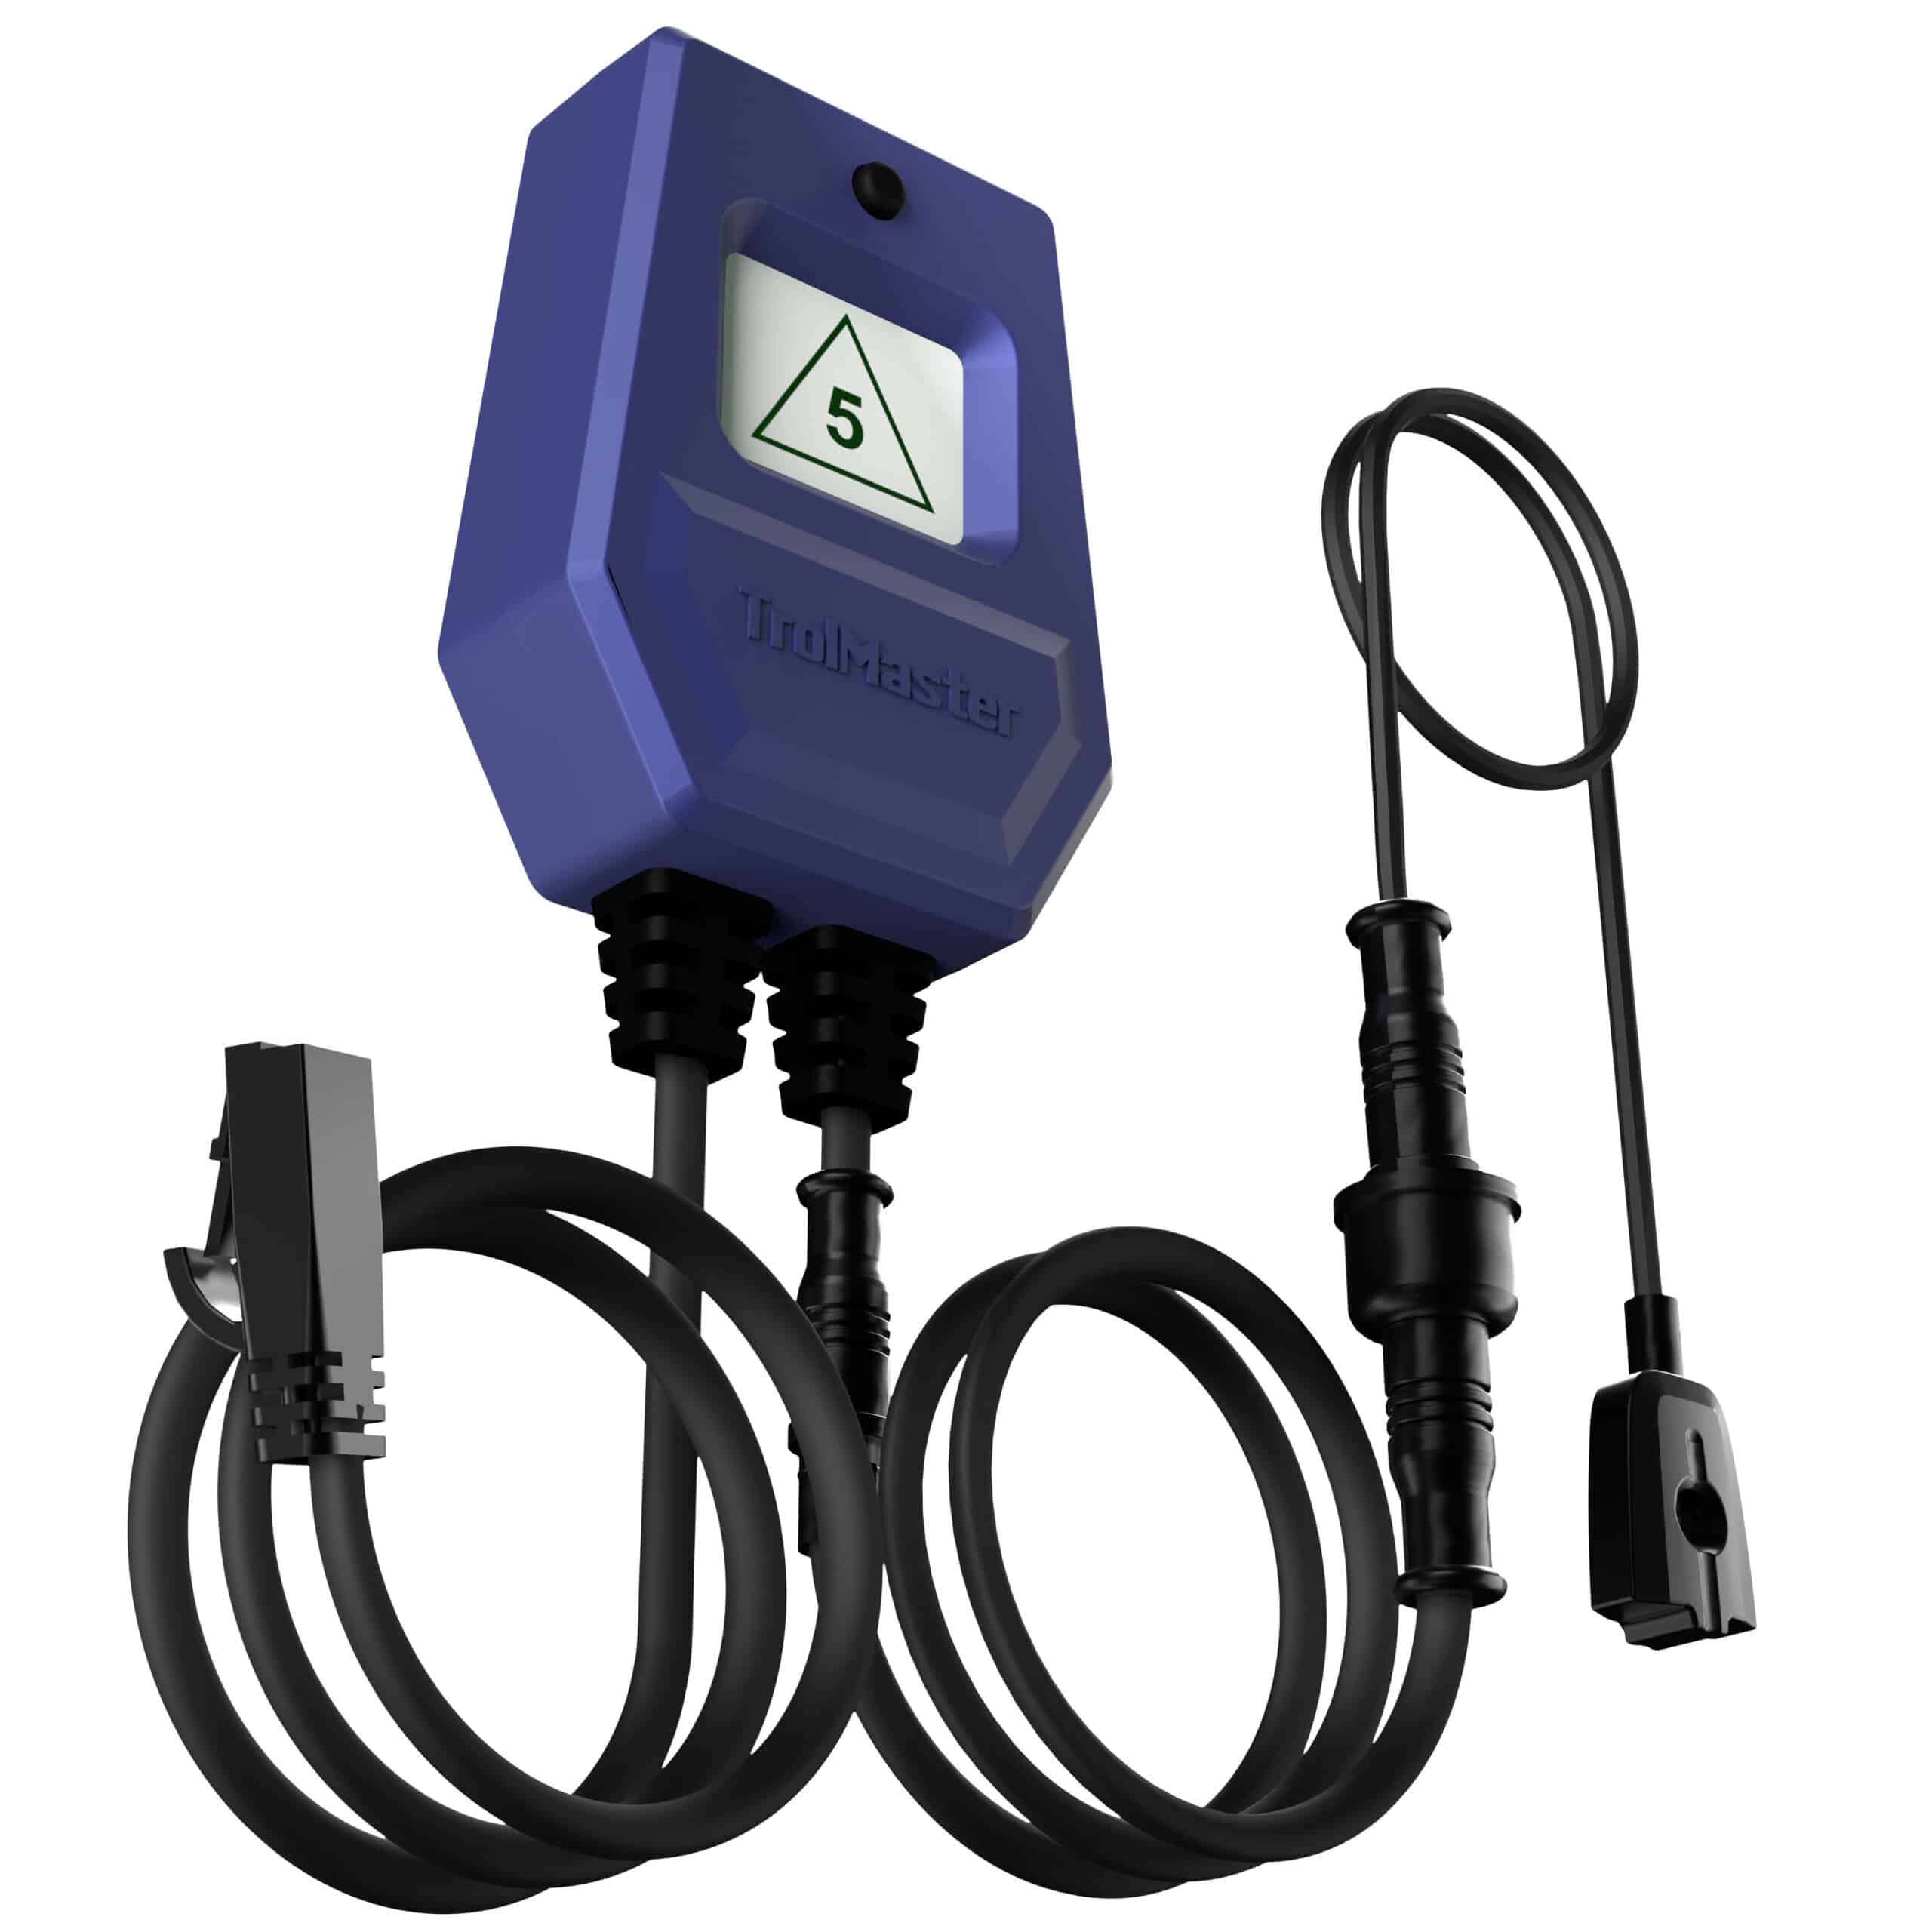 Trolmaster WD-1 Water Detector for Hydro-X & Aqua-X System